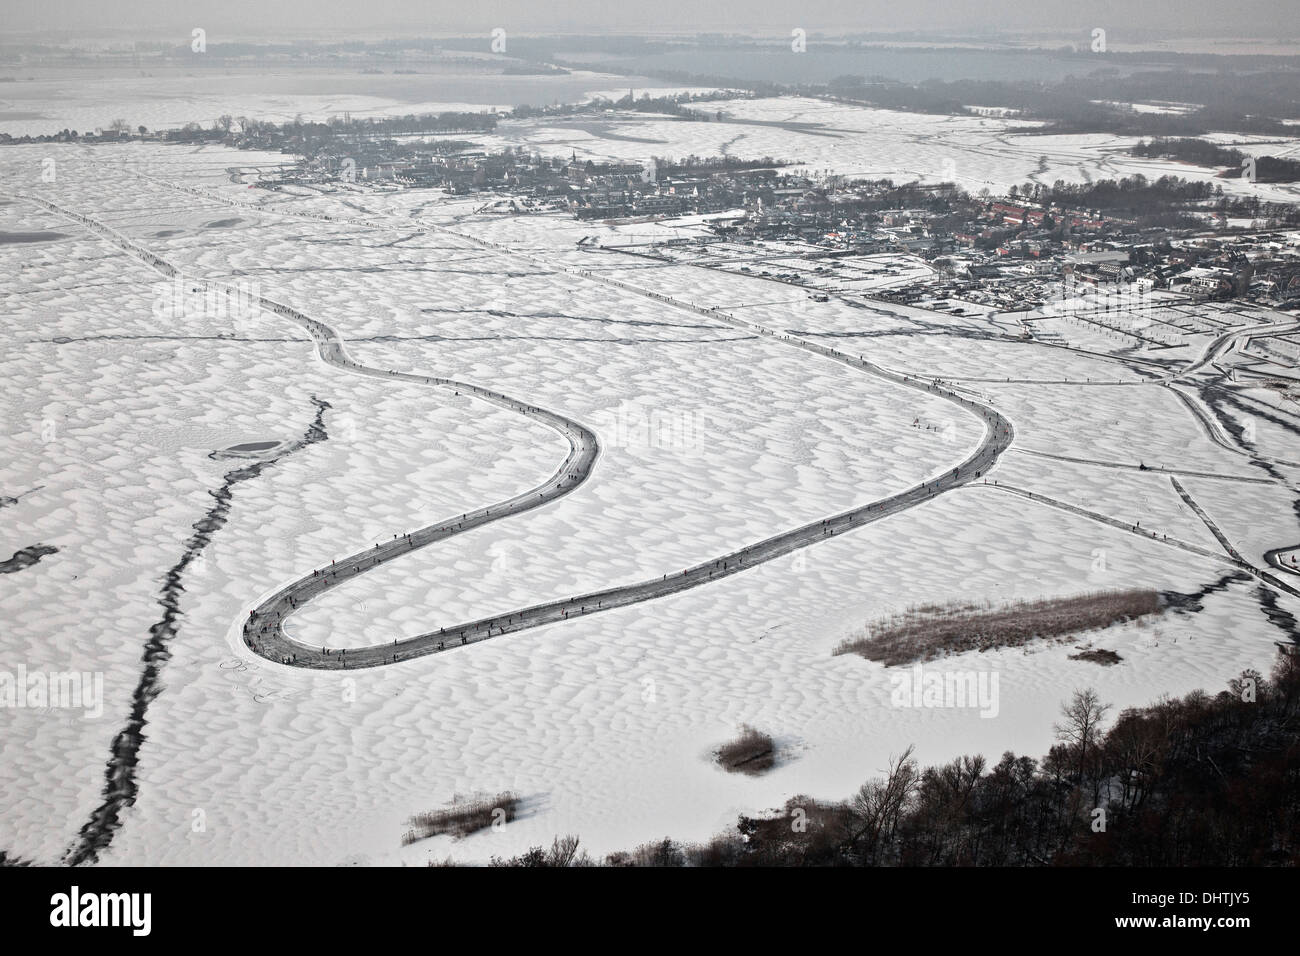 Niederlande, Loosdrecht, Menschen Eislaufen auf dem zugefrorenen Seen genannt Loosdrechtse Plassen. Luftbild Stockfoto